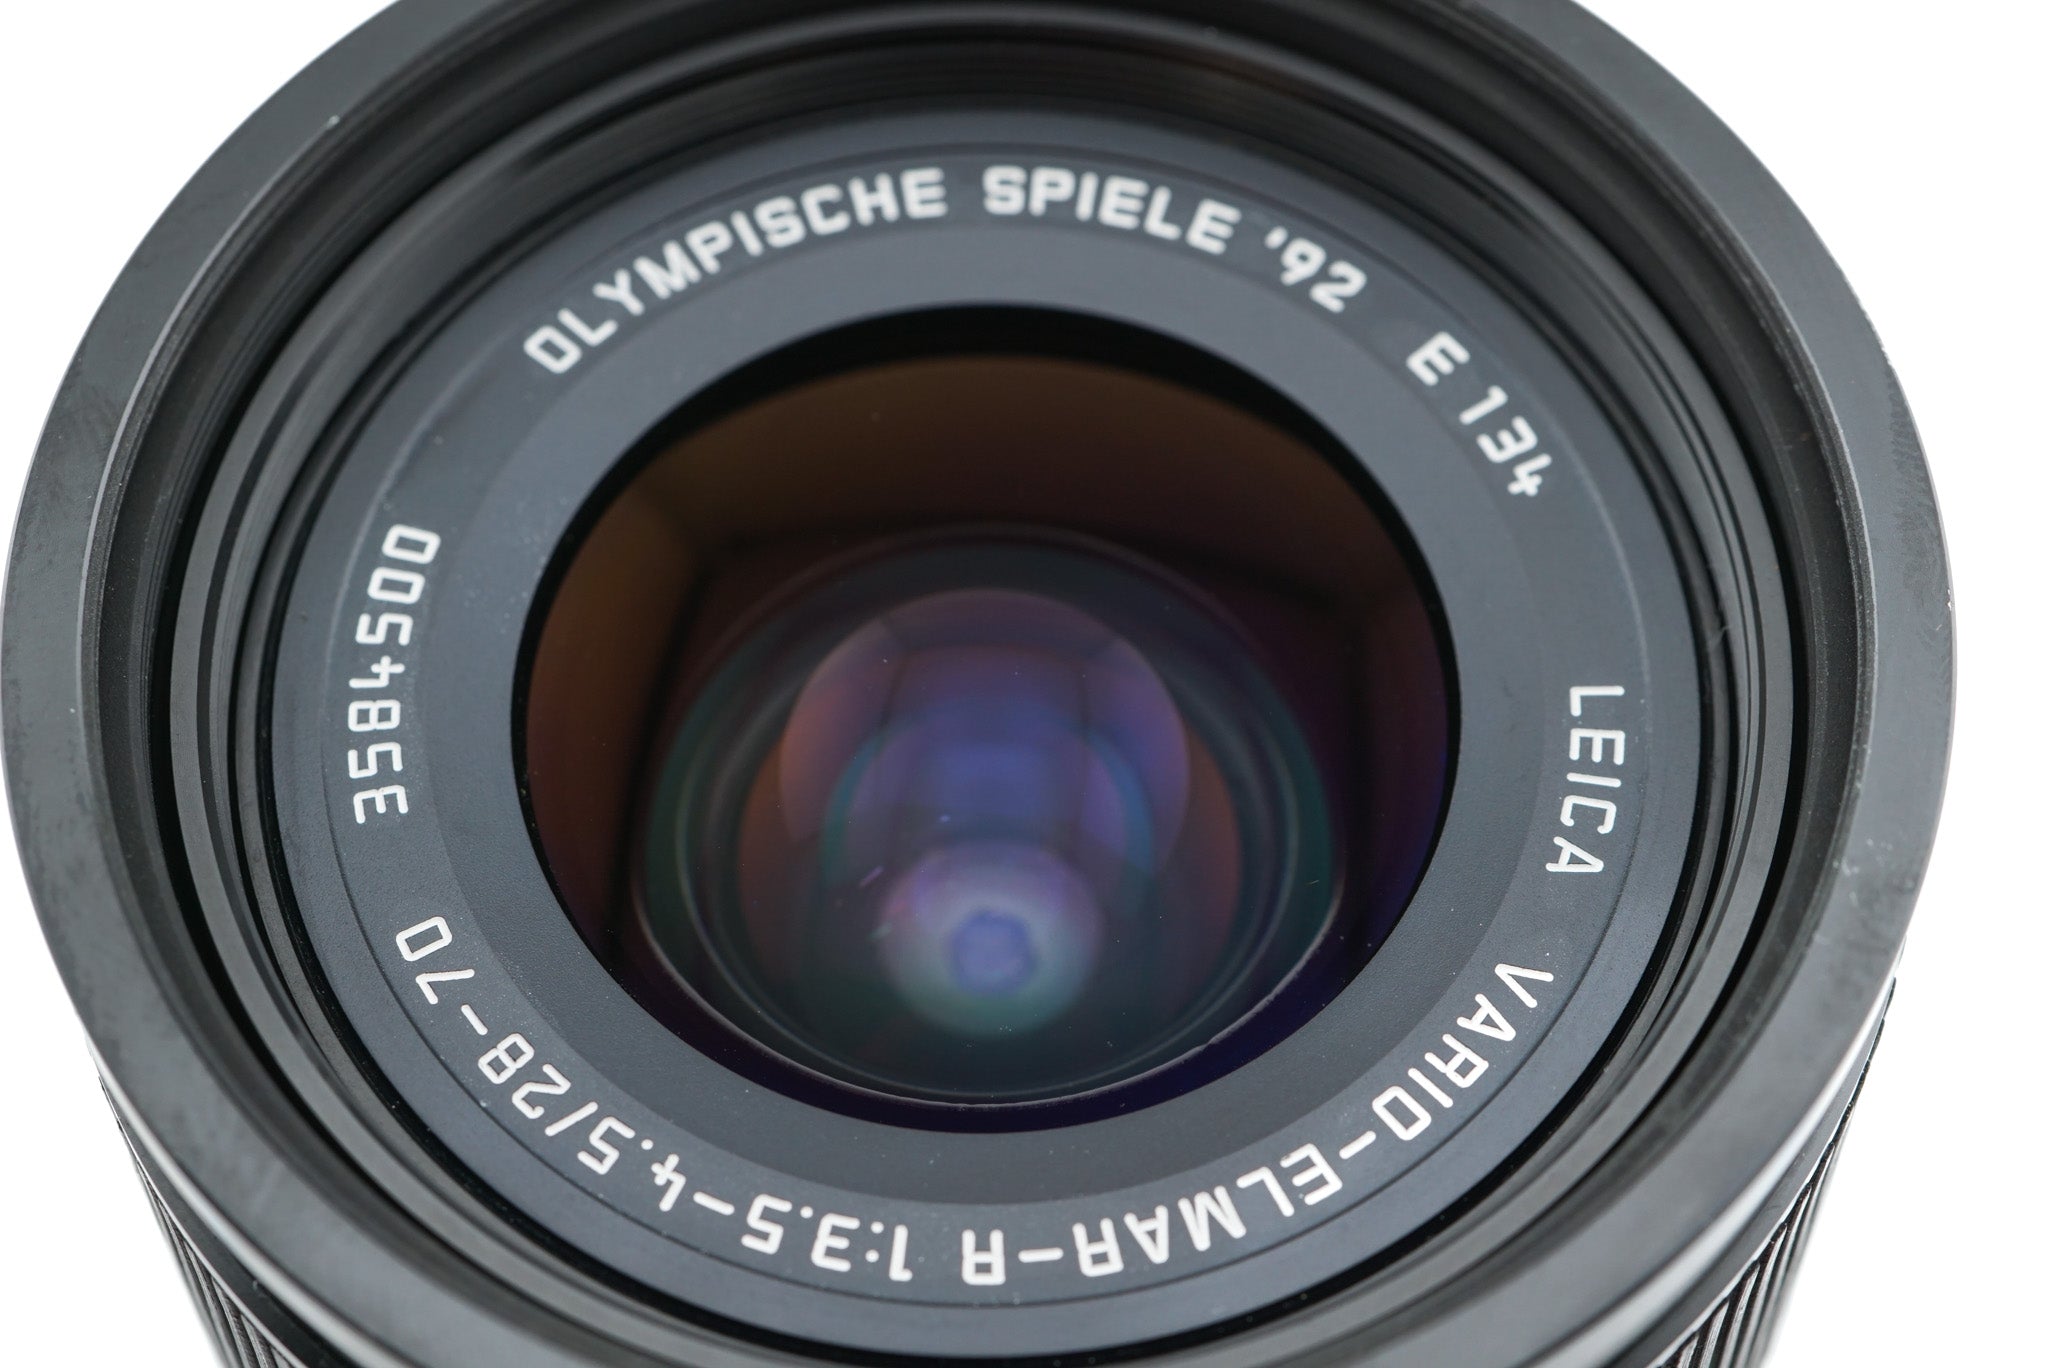 Leica 28-70mm f3.5-4.5 Vario-Elmar-R Olympische Spiele '92 (3-Cam 